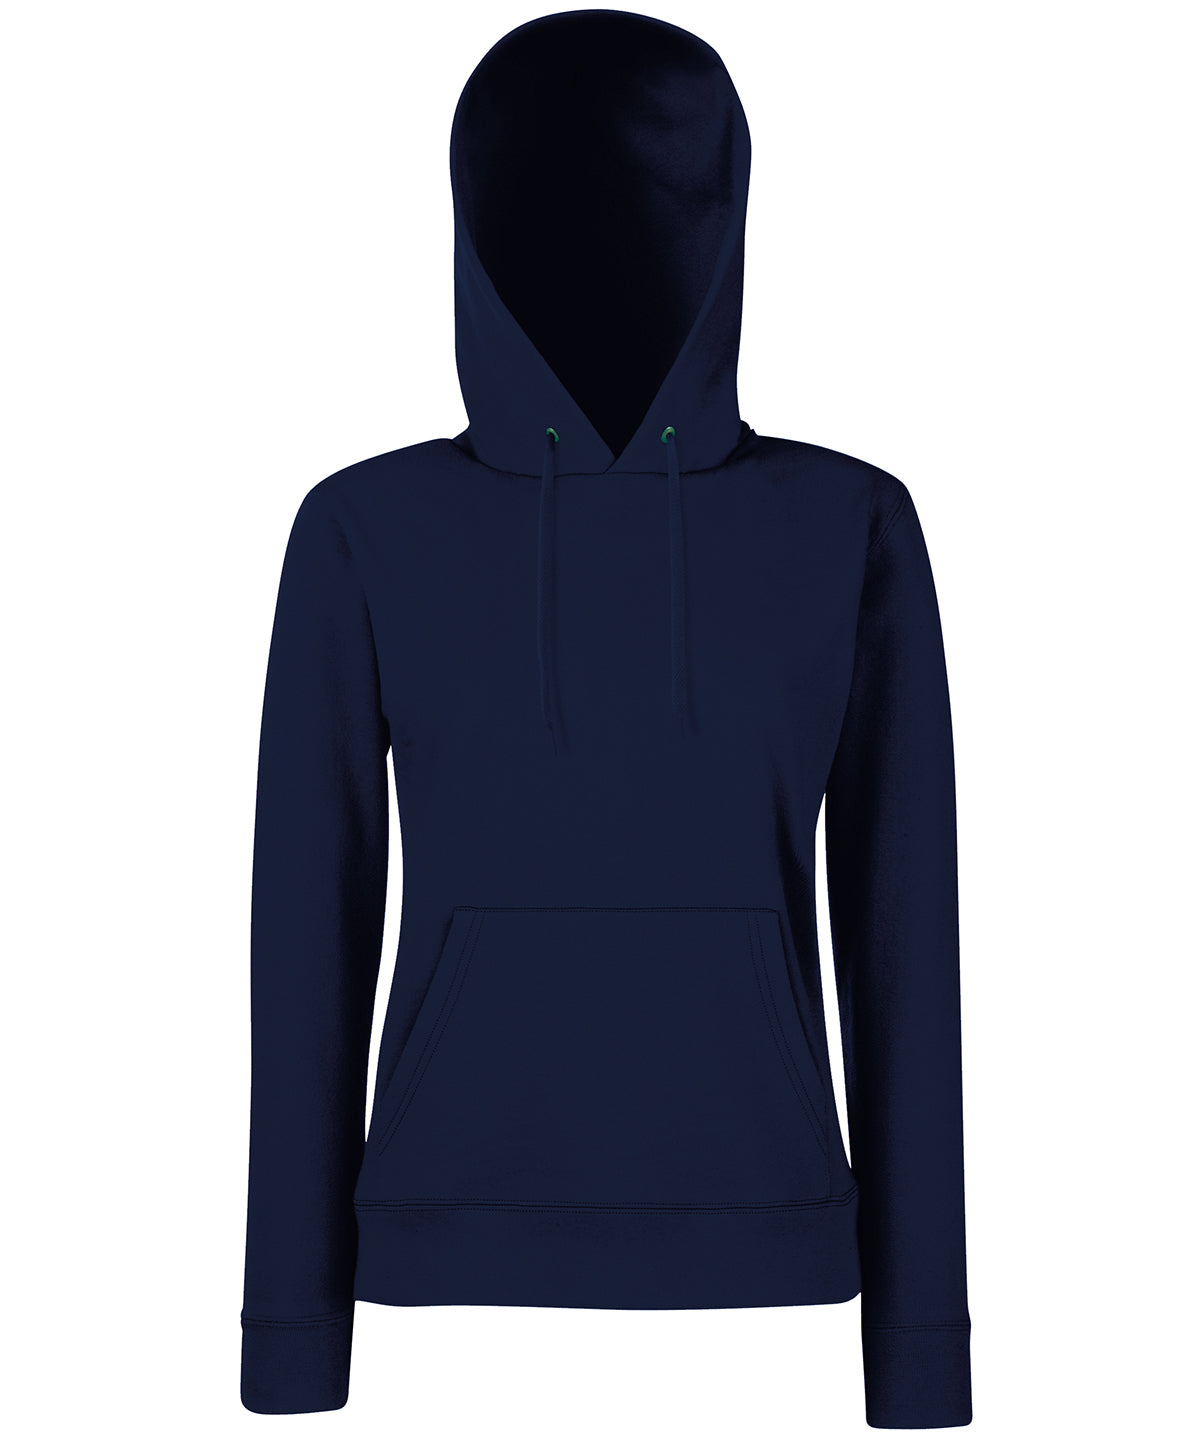 Personalised Hoodies - Mid Blue Fruit of the Loom Women's Classic 80/20 hooded sweatshirt